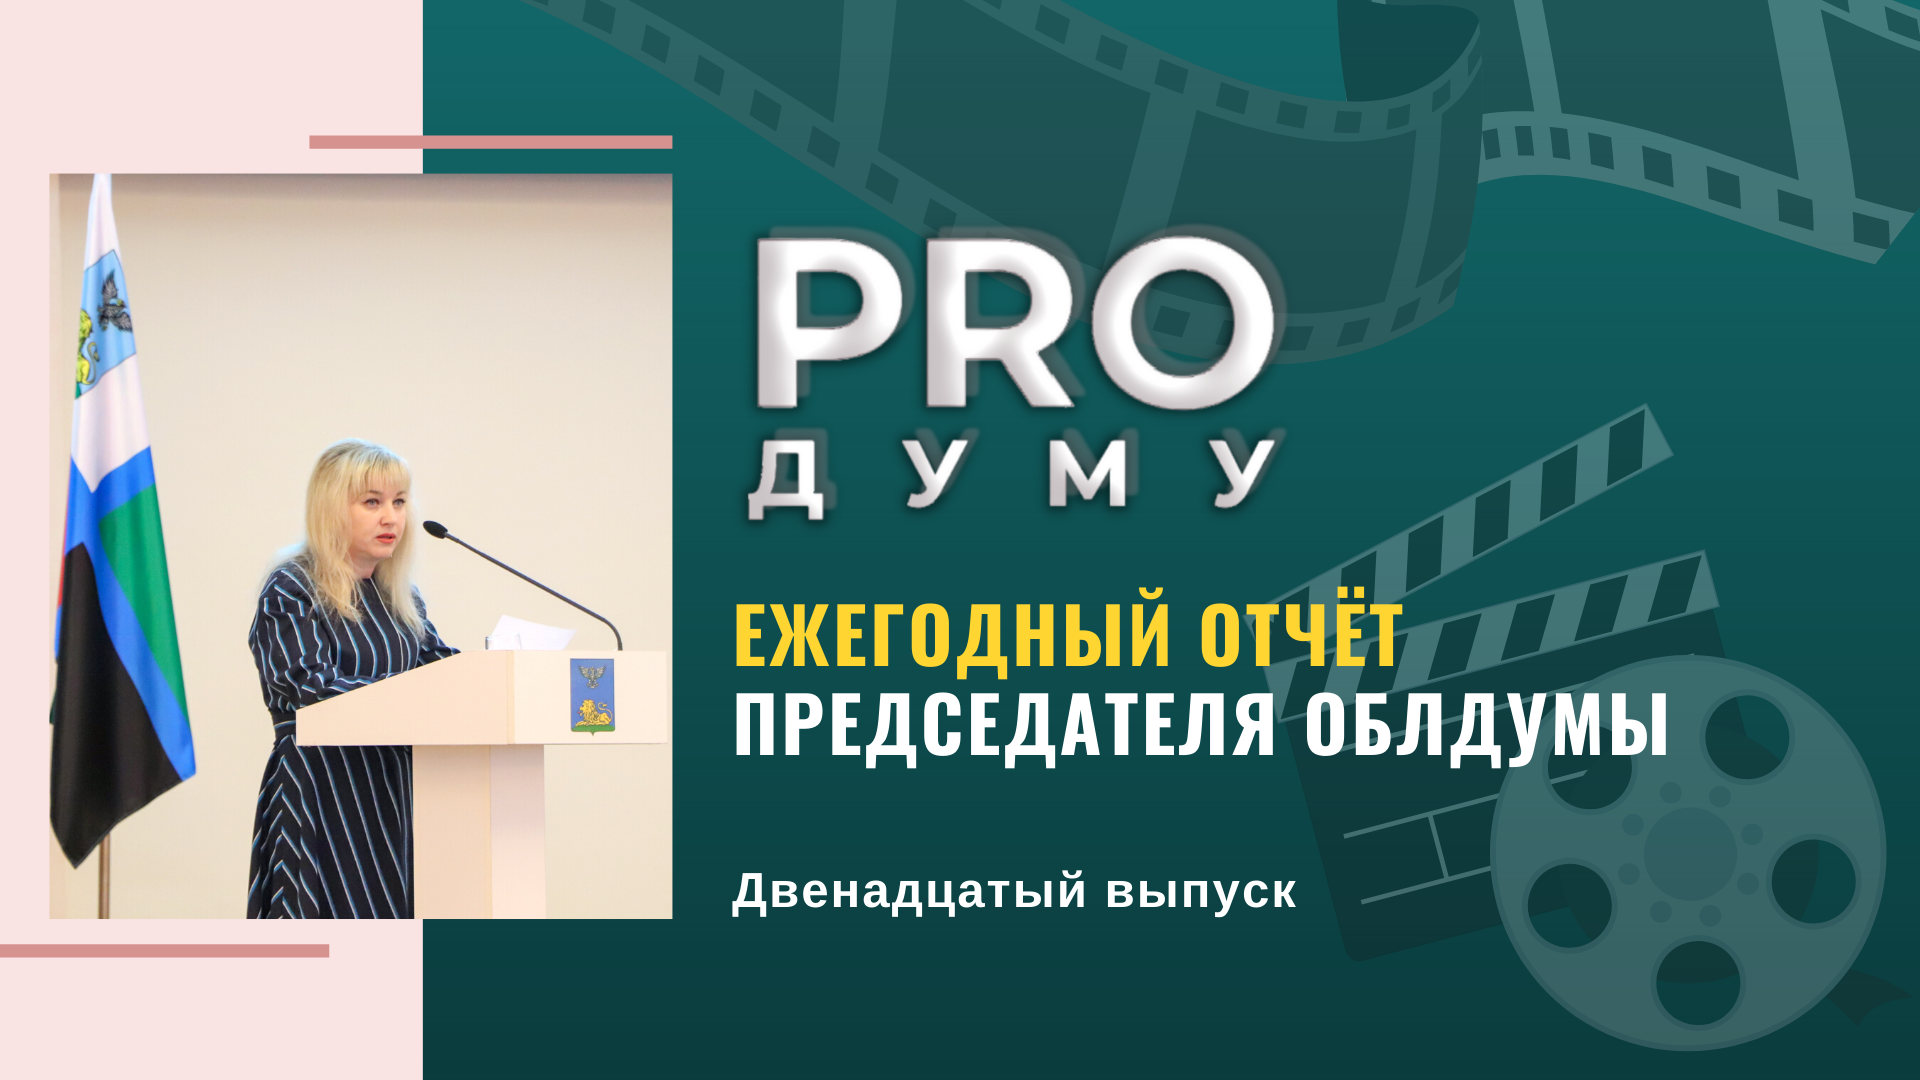 PRO Думу: ежегодный отчёт председателя областной Думы Ольги Павловой